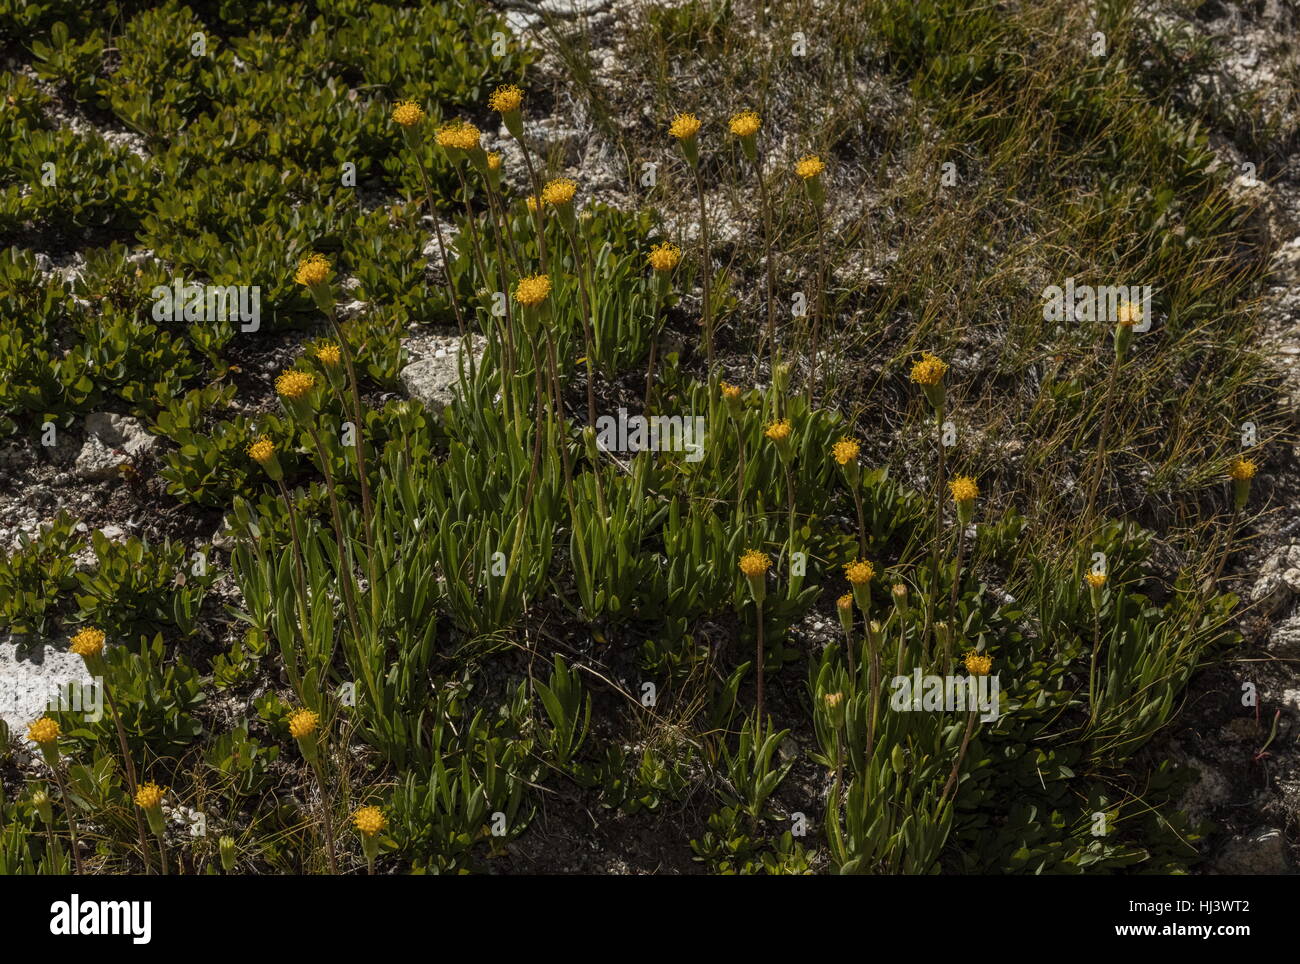 Green leaved raillardella, Raillardella scaposa, in flower at high altitude, Yosemite. Stock Photo